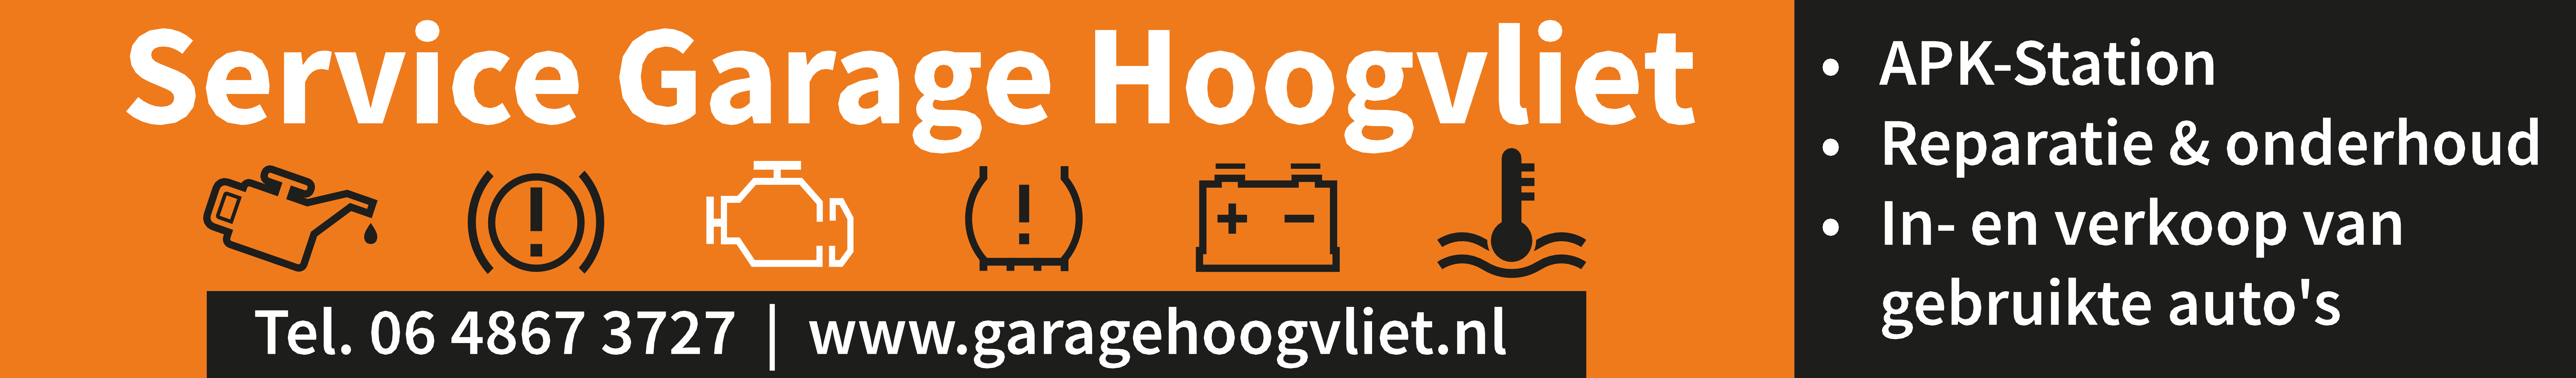 Service Garage Hoogvliet